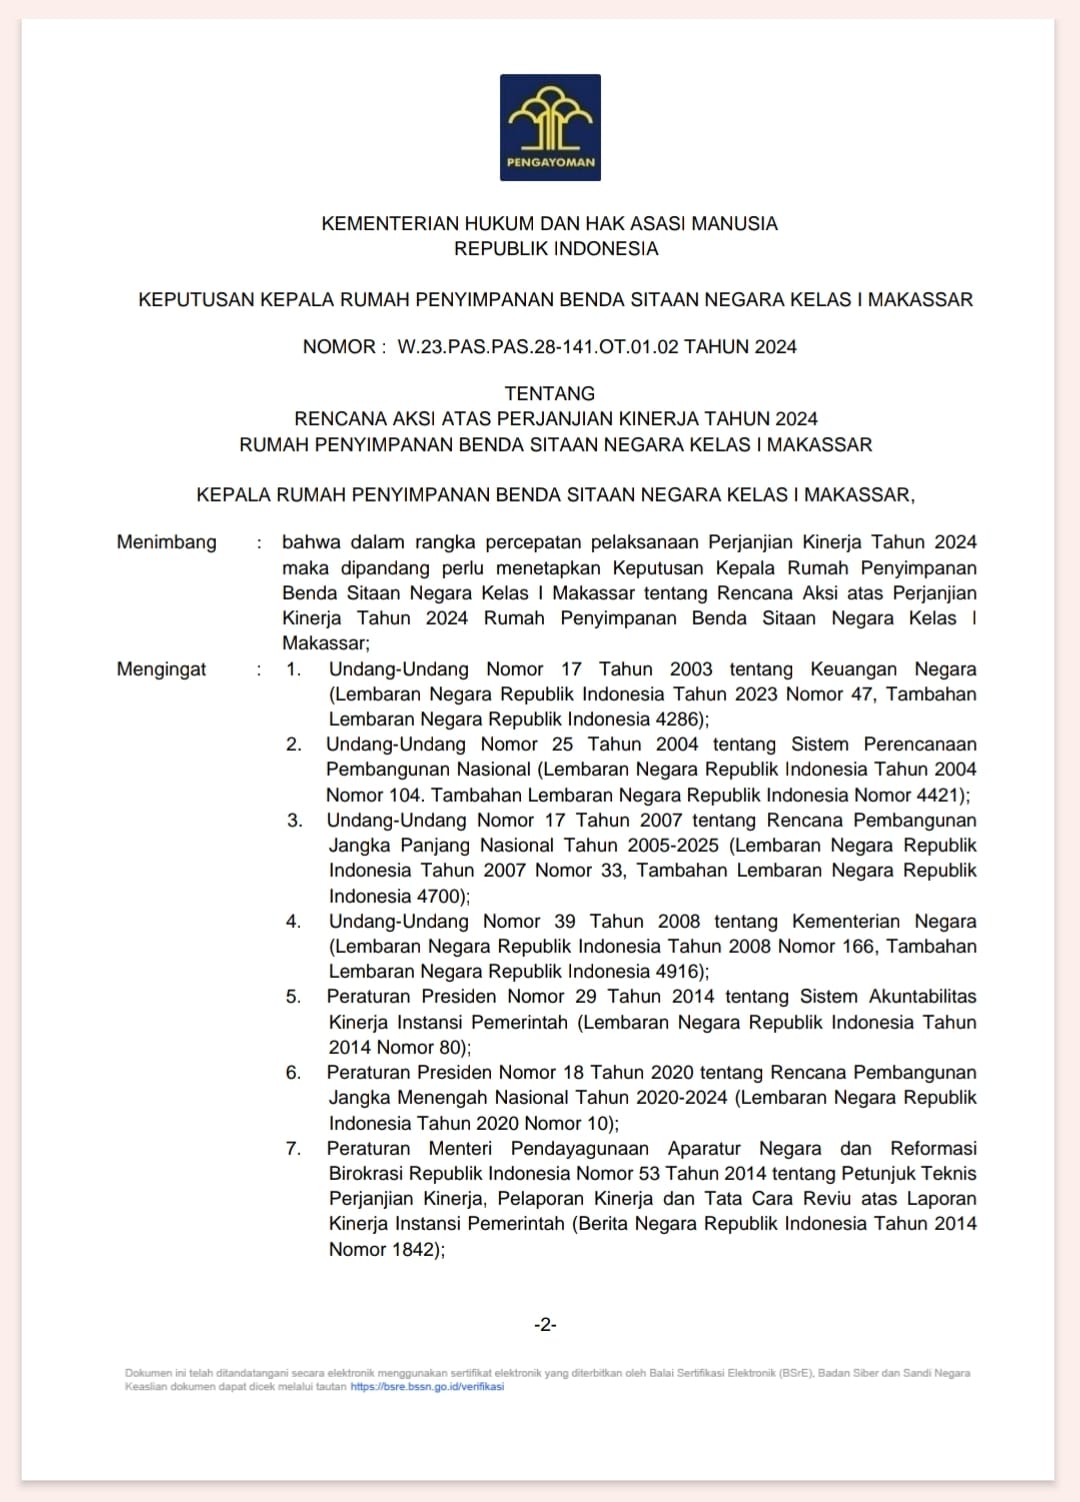 Rencana Aksi Atas Perjanjian Kinerja Tahun 2024 Rupbasan Makassar